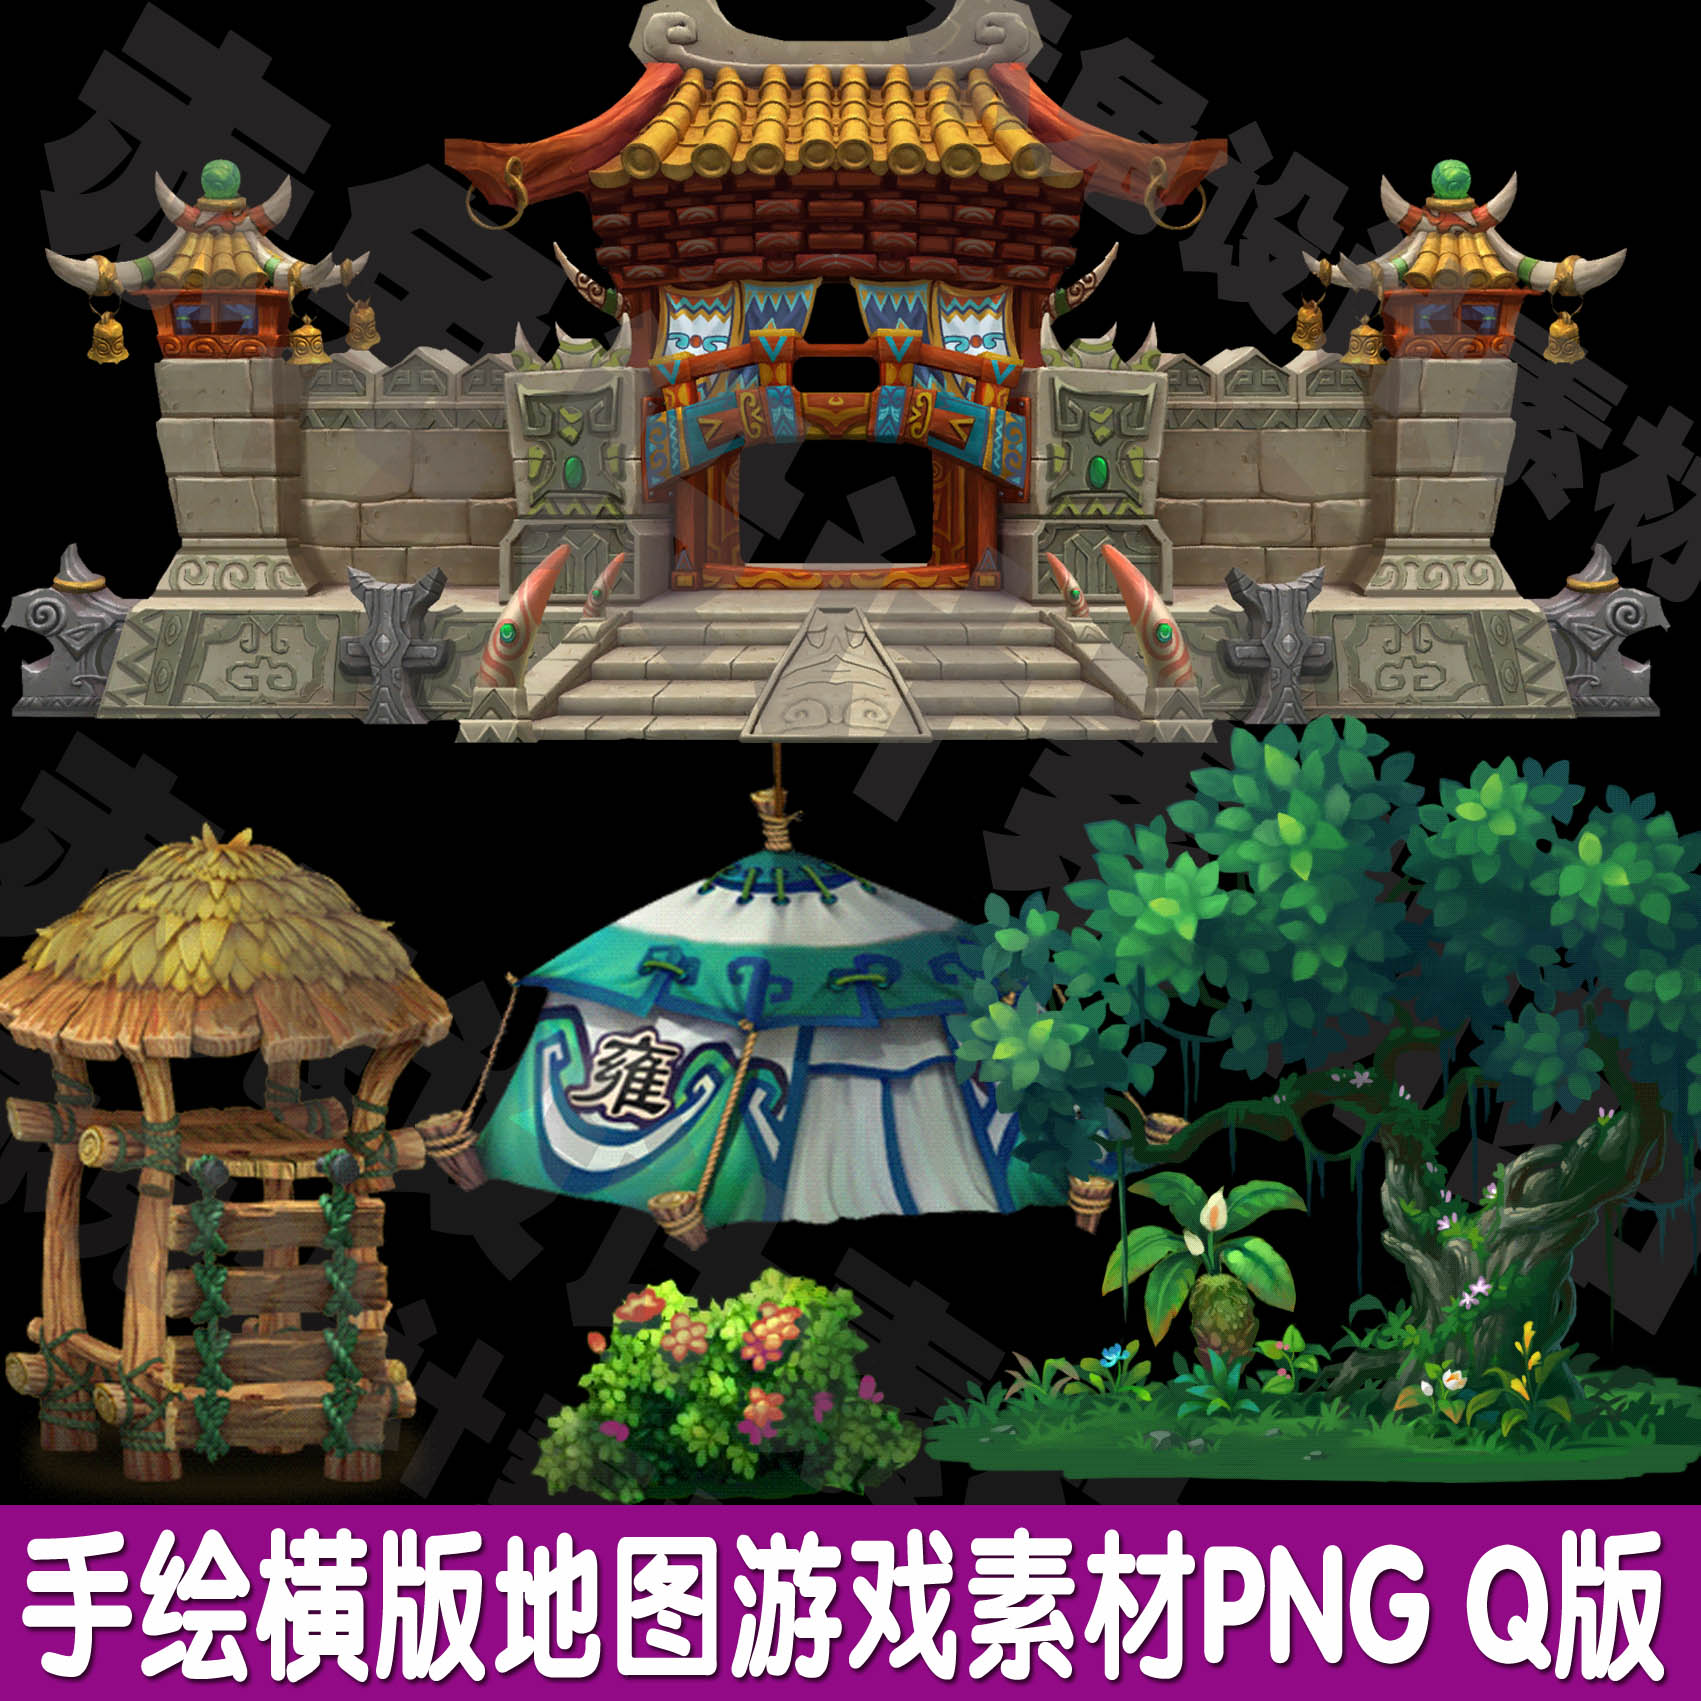 游戏原画资源场景素材2D资源横版地图手网游Q版手绘建筑场景PNG